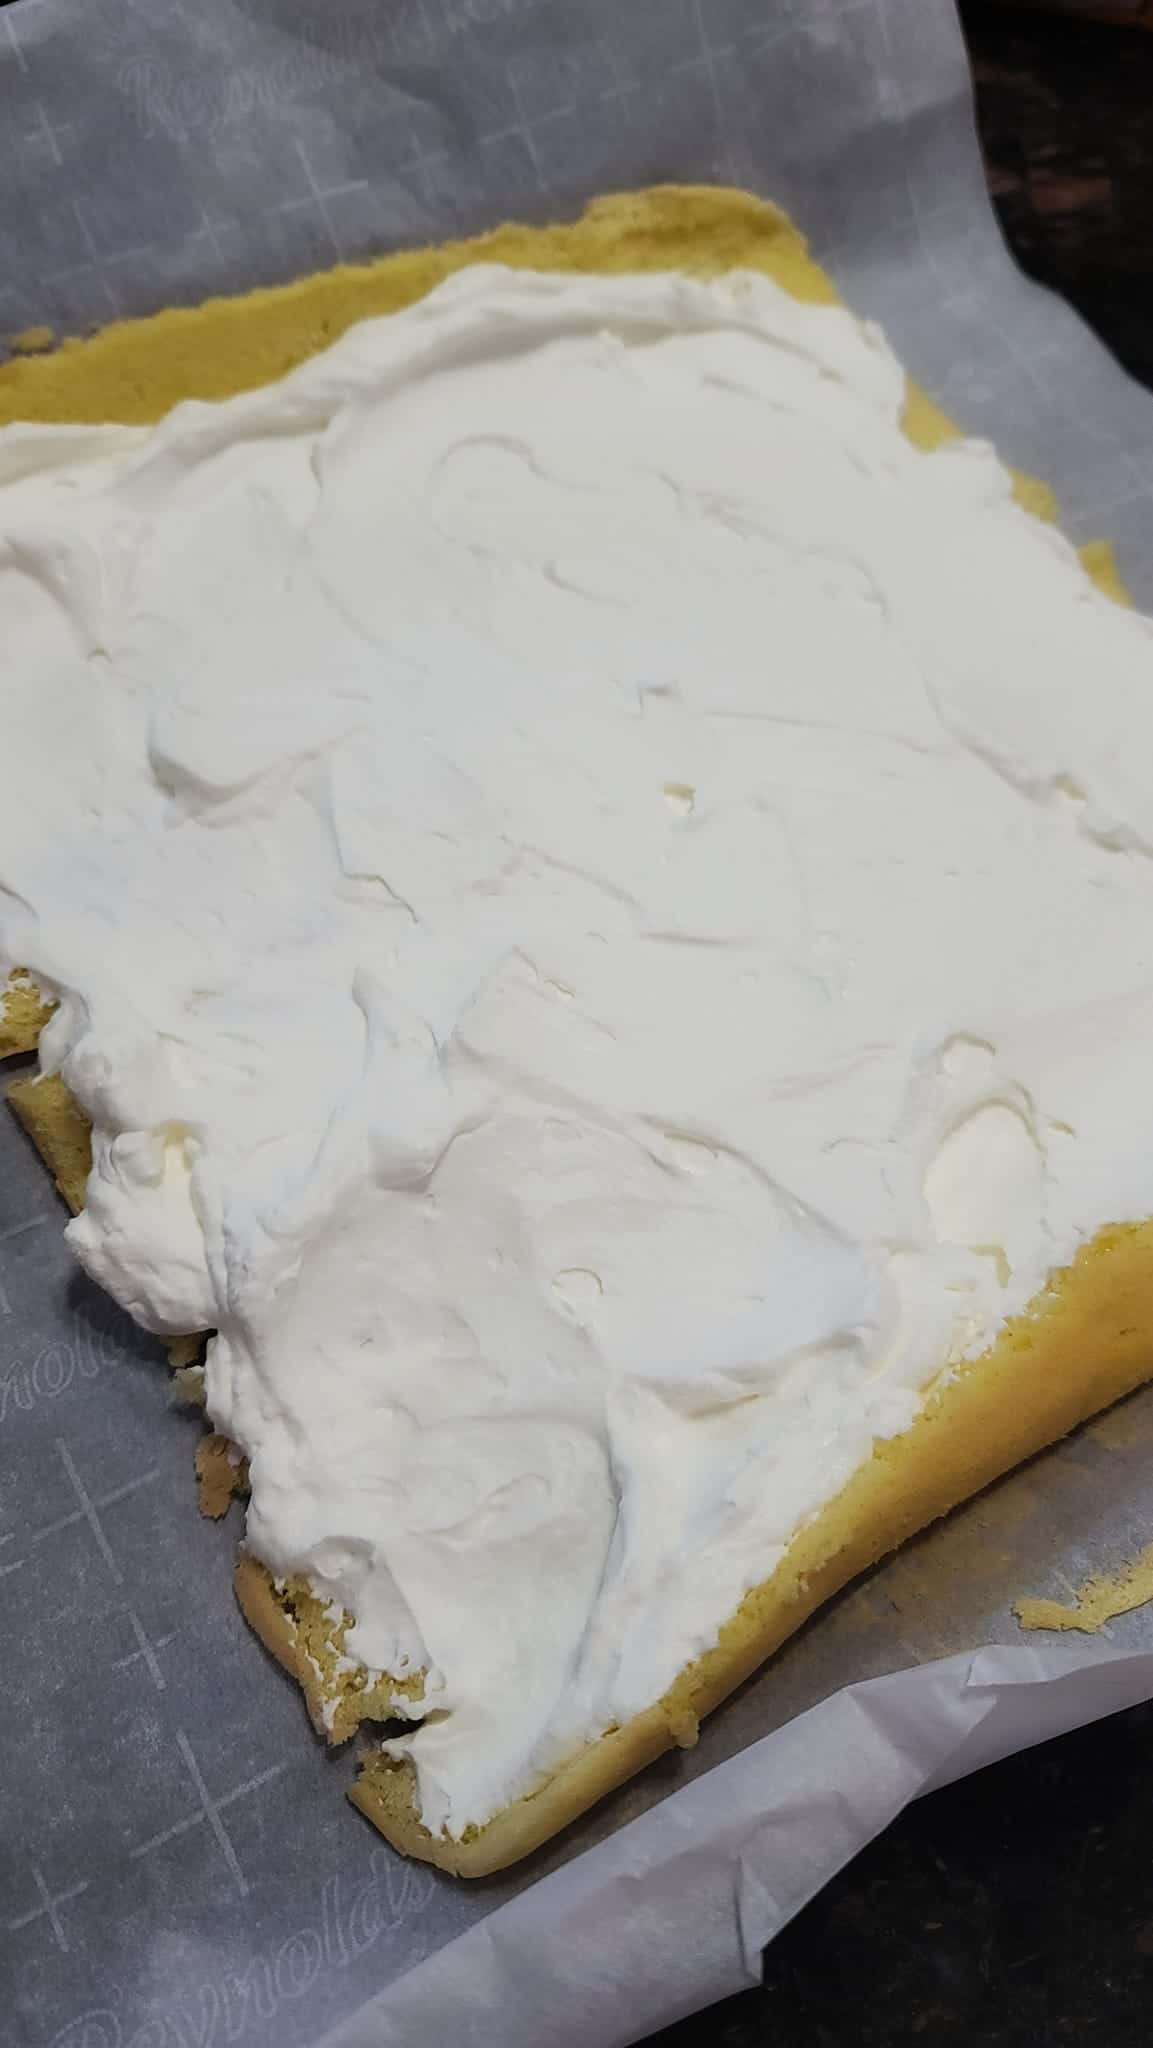 whipped cream spread on sponge cake